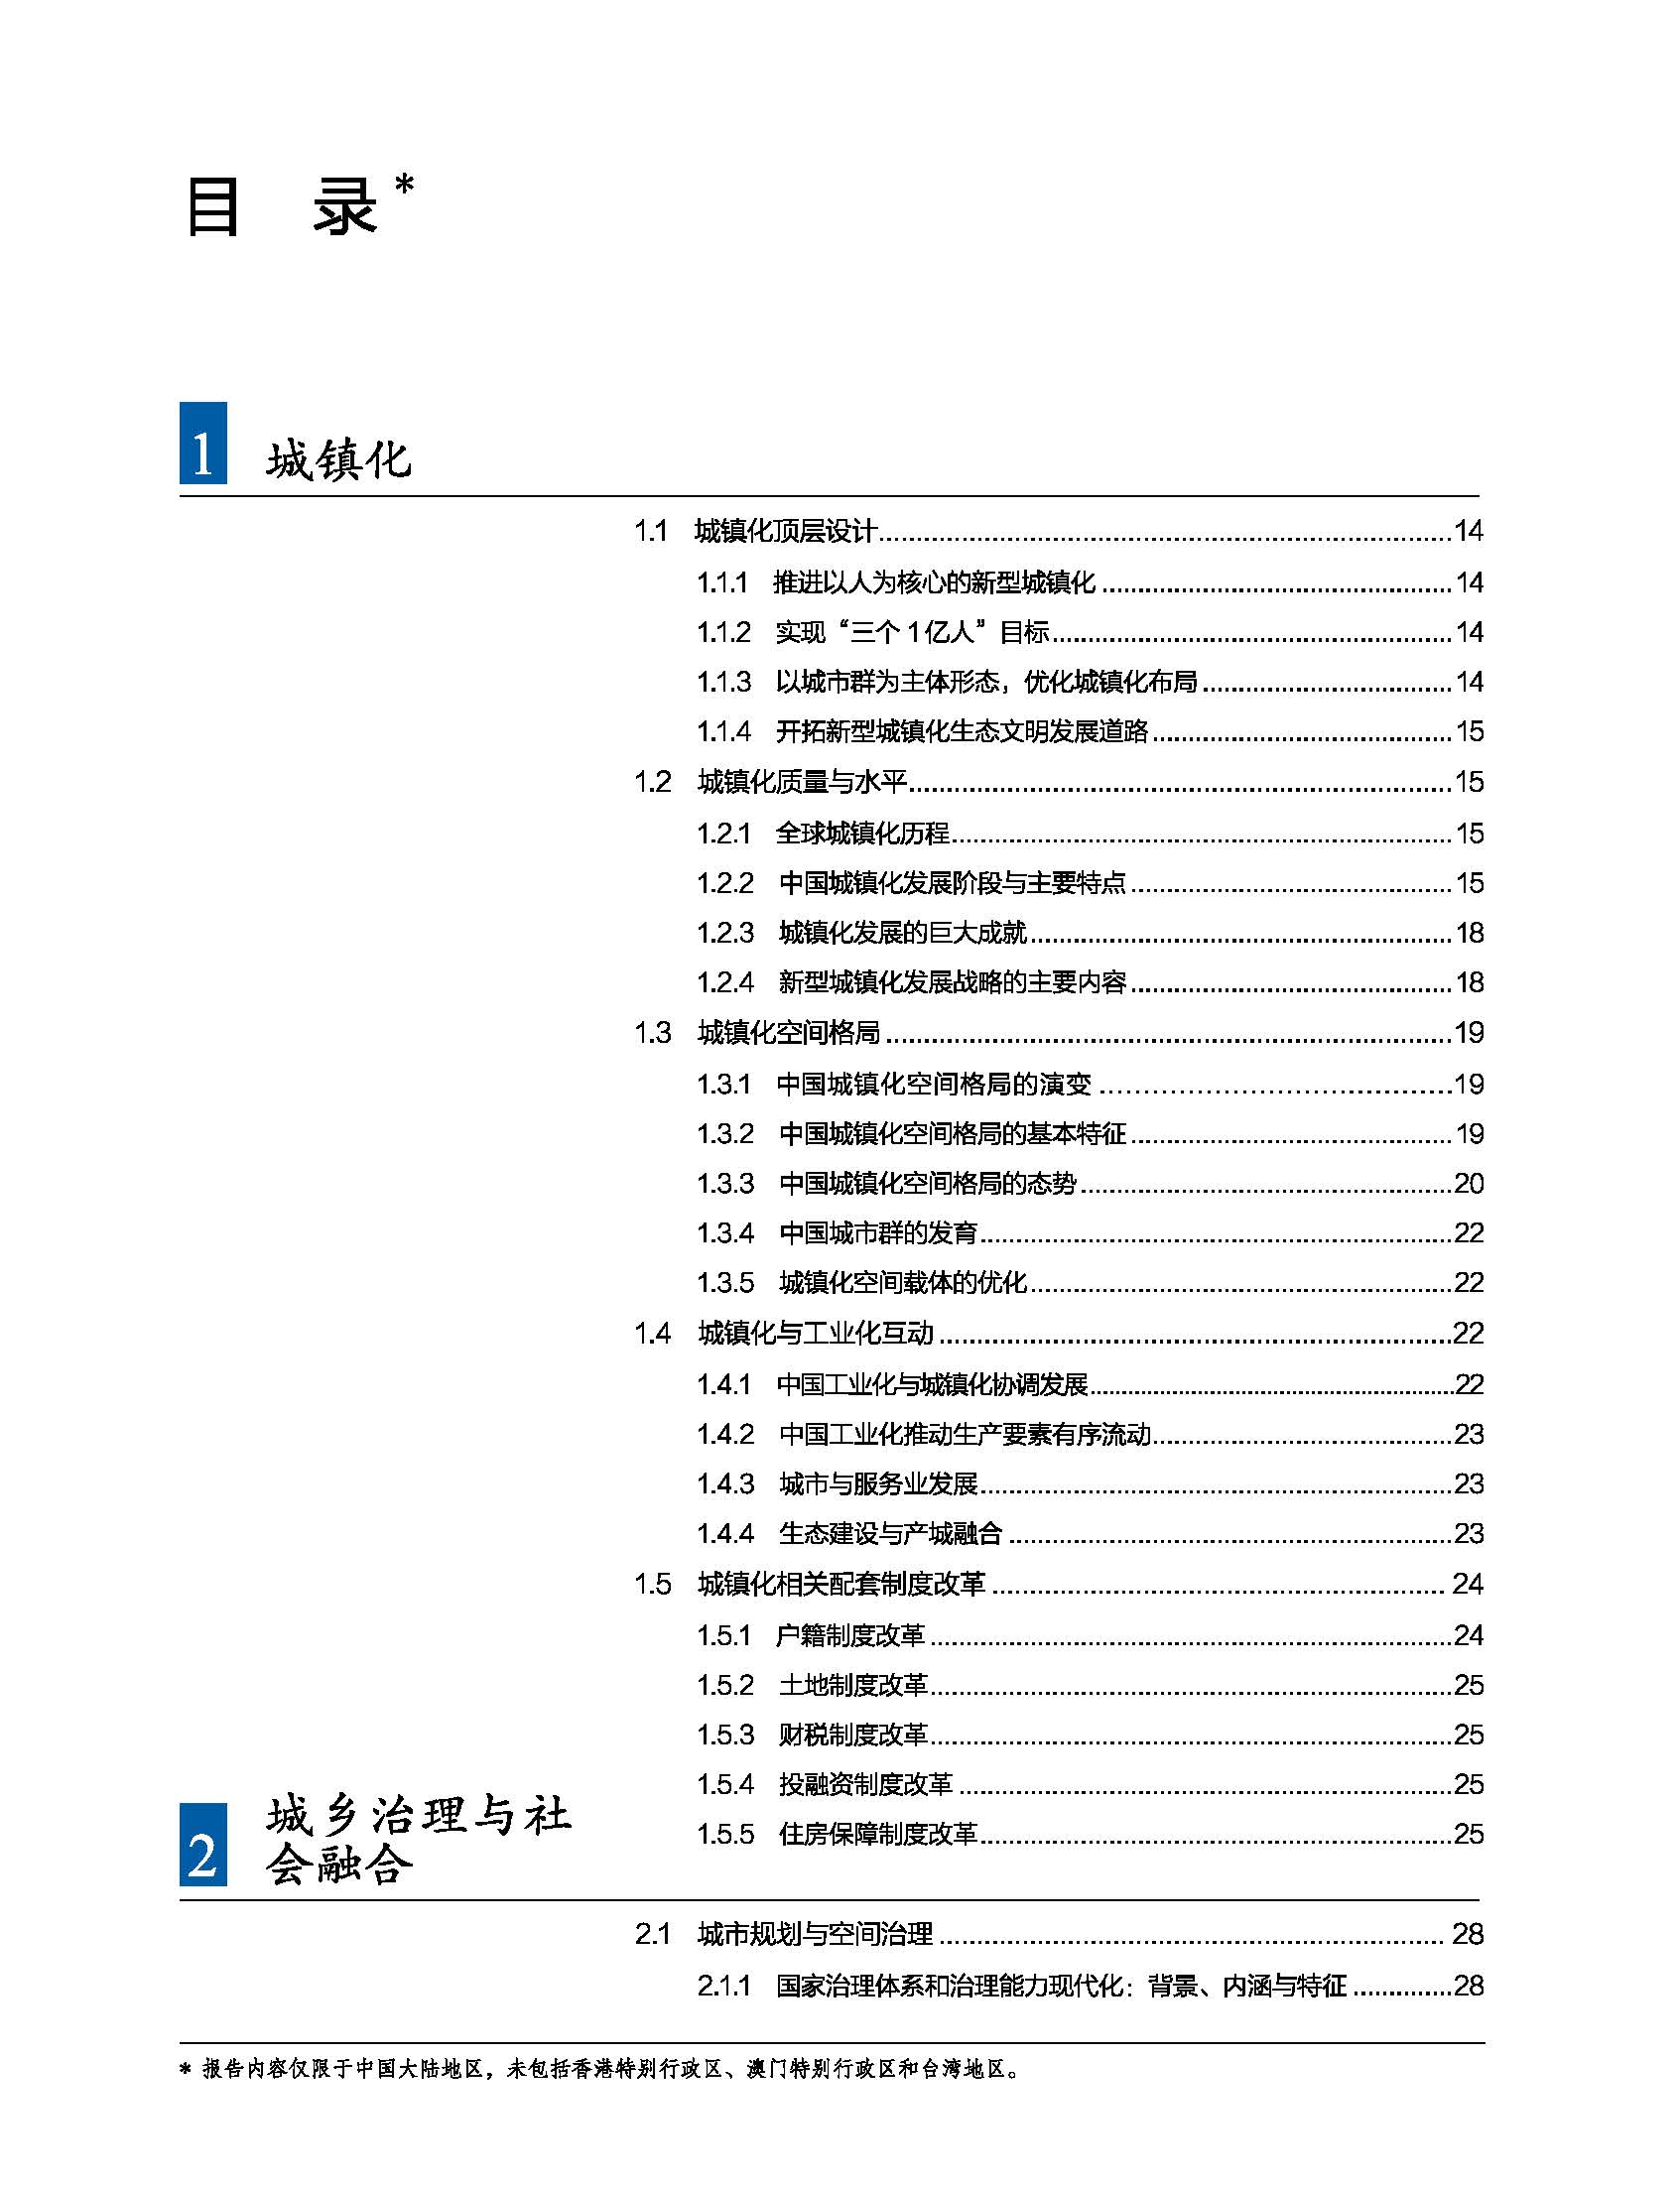 状况报告2016-2017中文 8.jpg